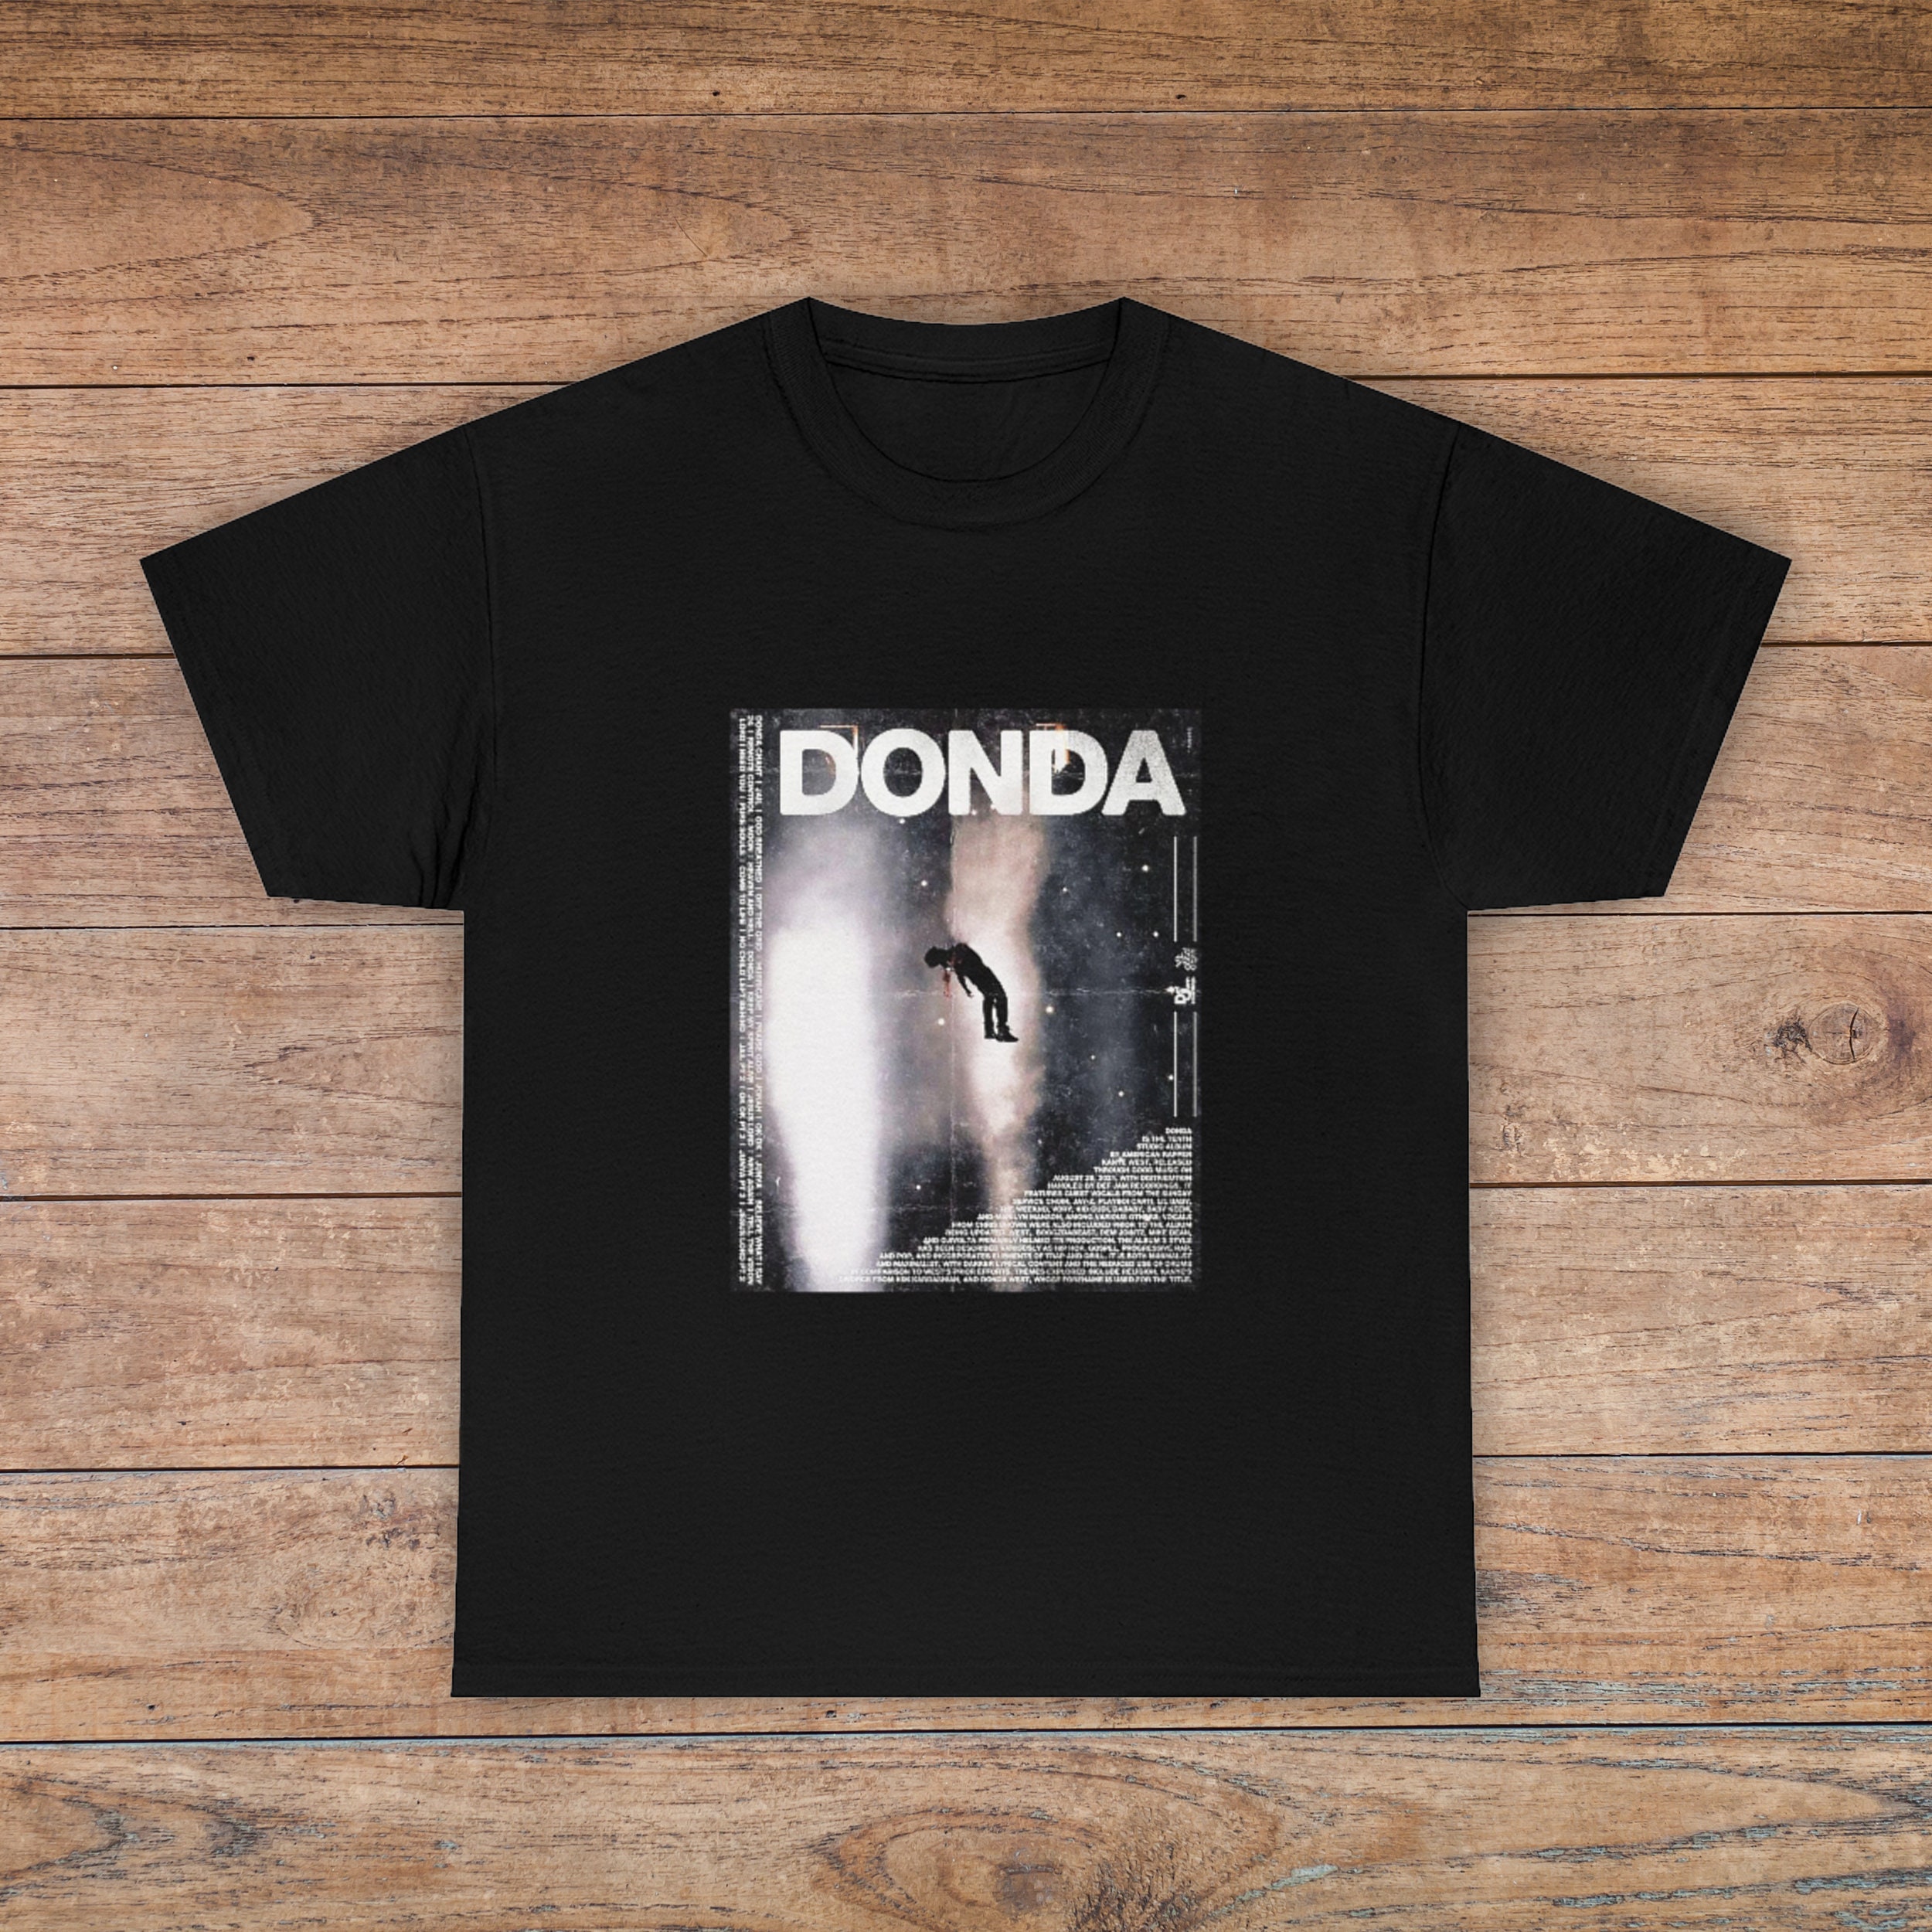 Discover DONDA T-Shirt, Kanye Tee, Hip Hop Clothing